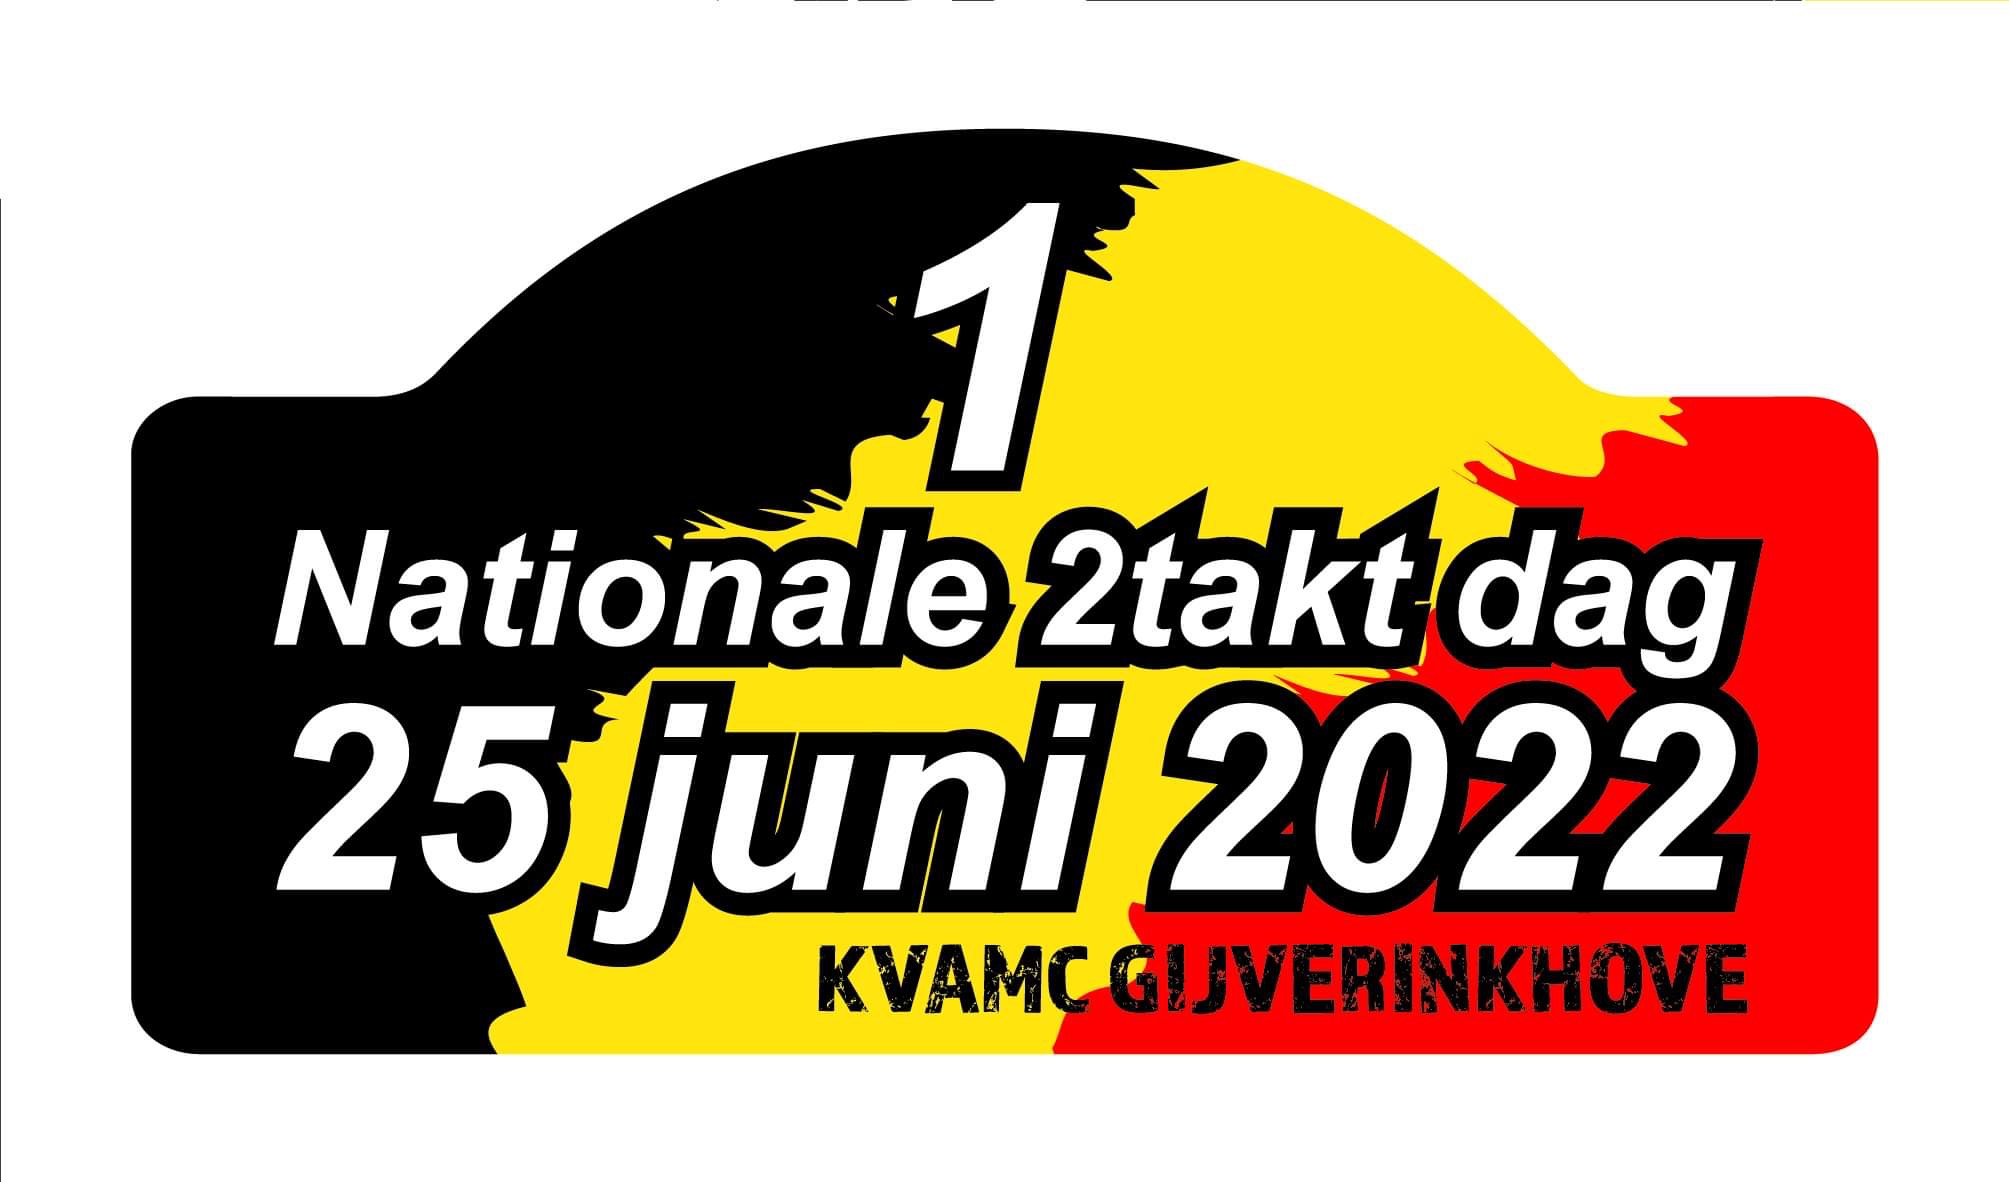 Nationale tweetaktdag 2022